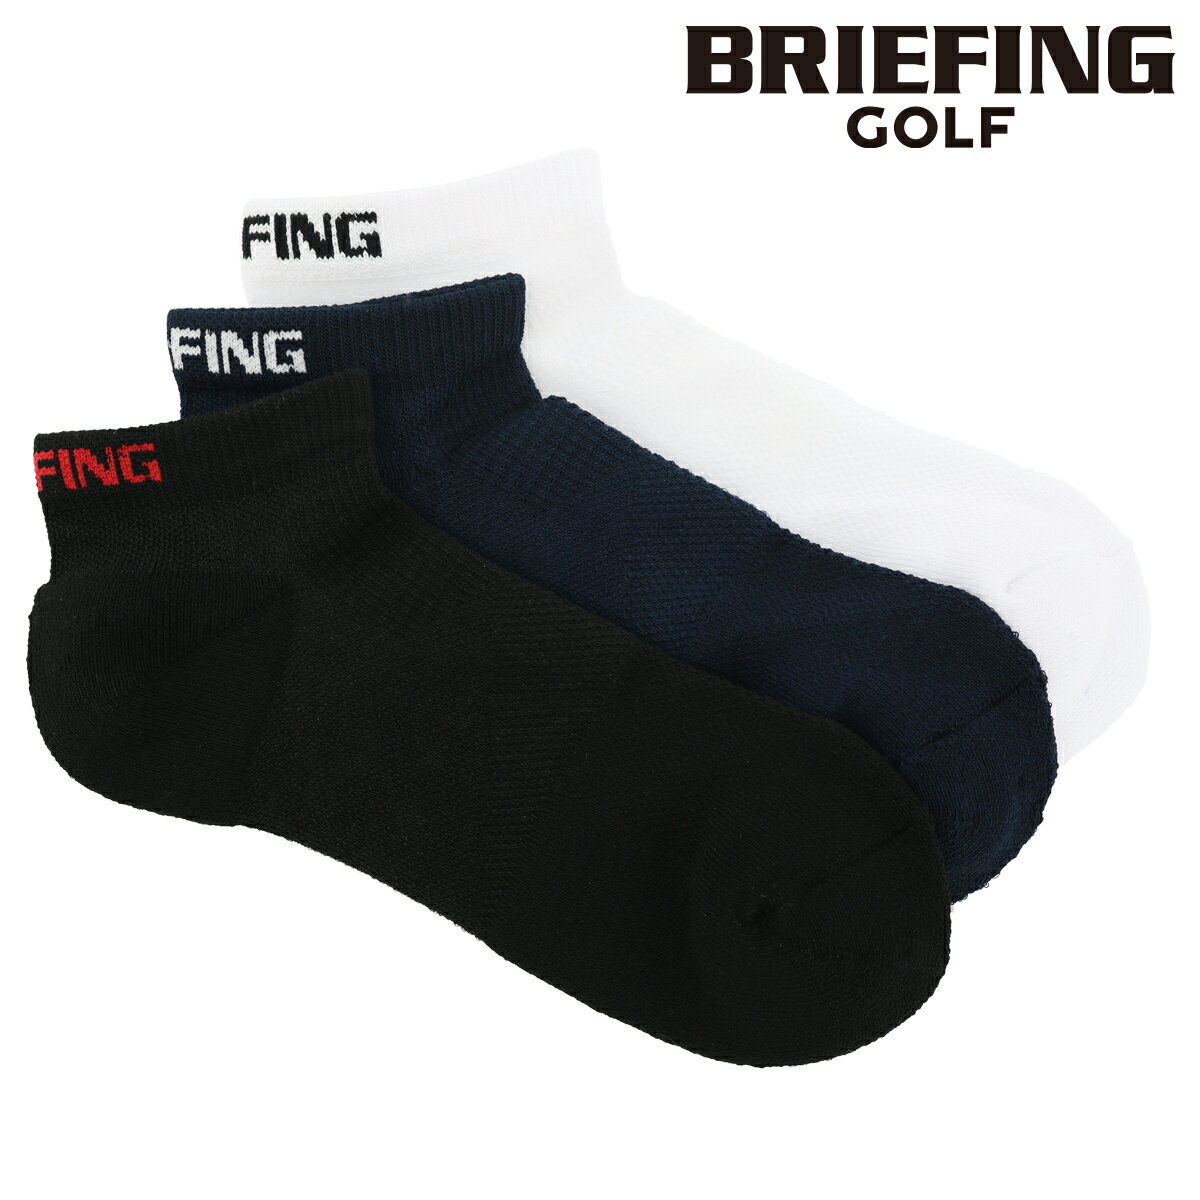 ブリーフィング ソックス ゴルフ メンズ 靴下 BRG193M33 日本製 BRIEFING | スニーカーソックス ネコポス メール便[bef]